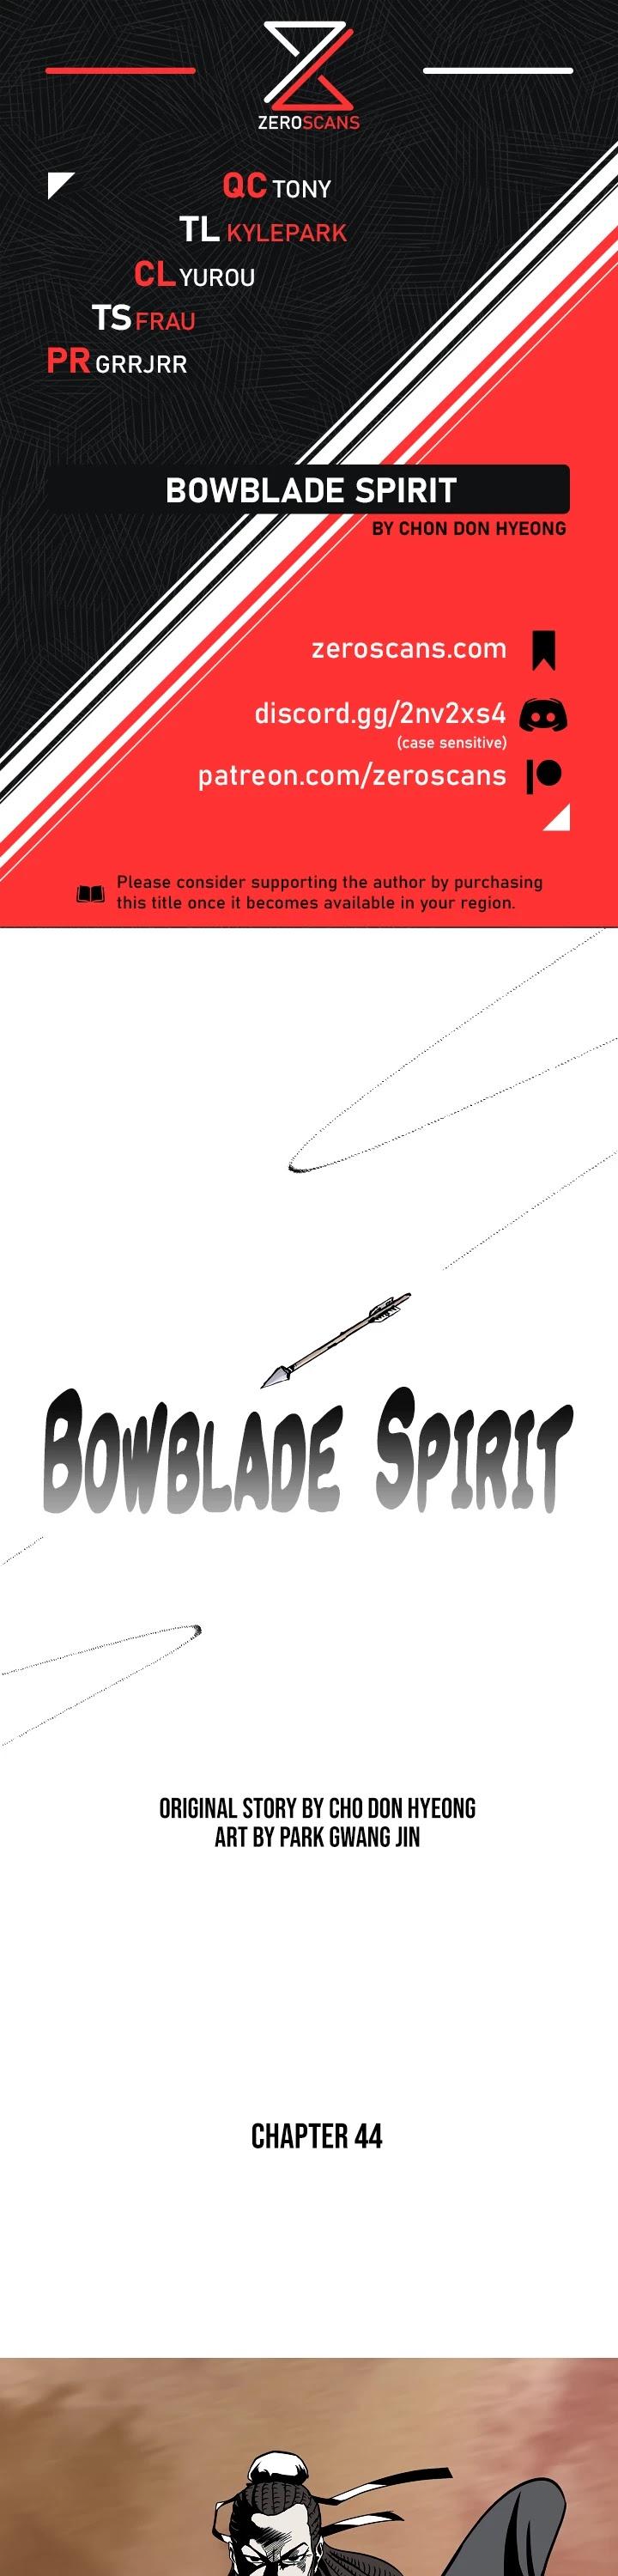 Bowblade Spirit - Chapter 44 Page 1